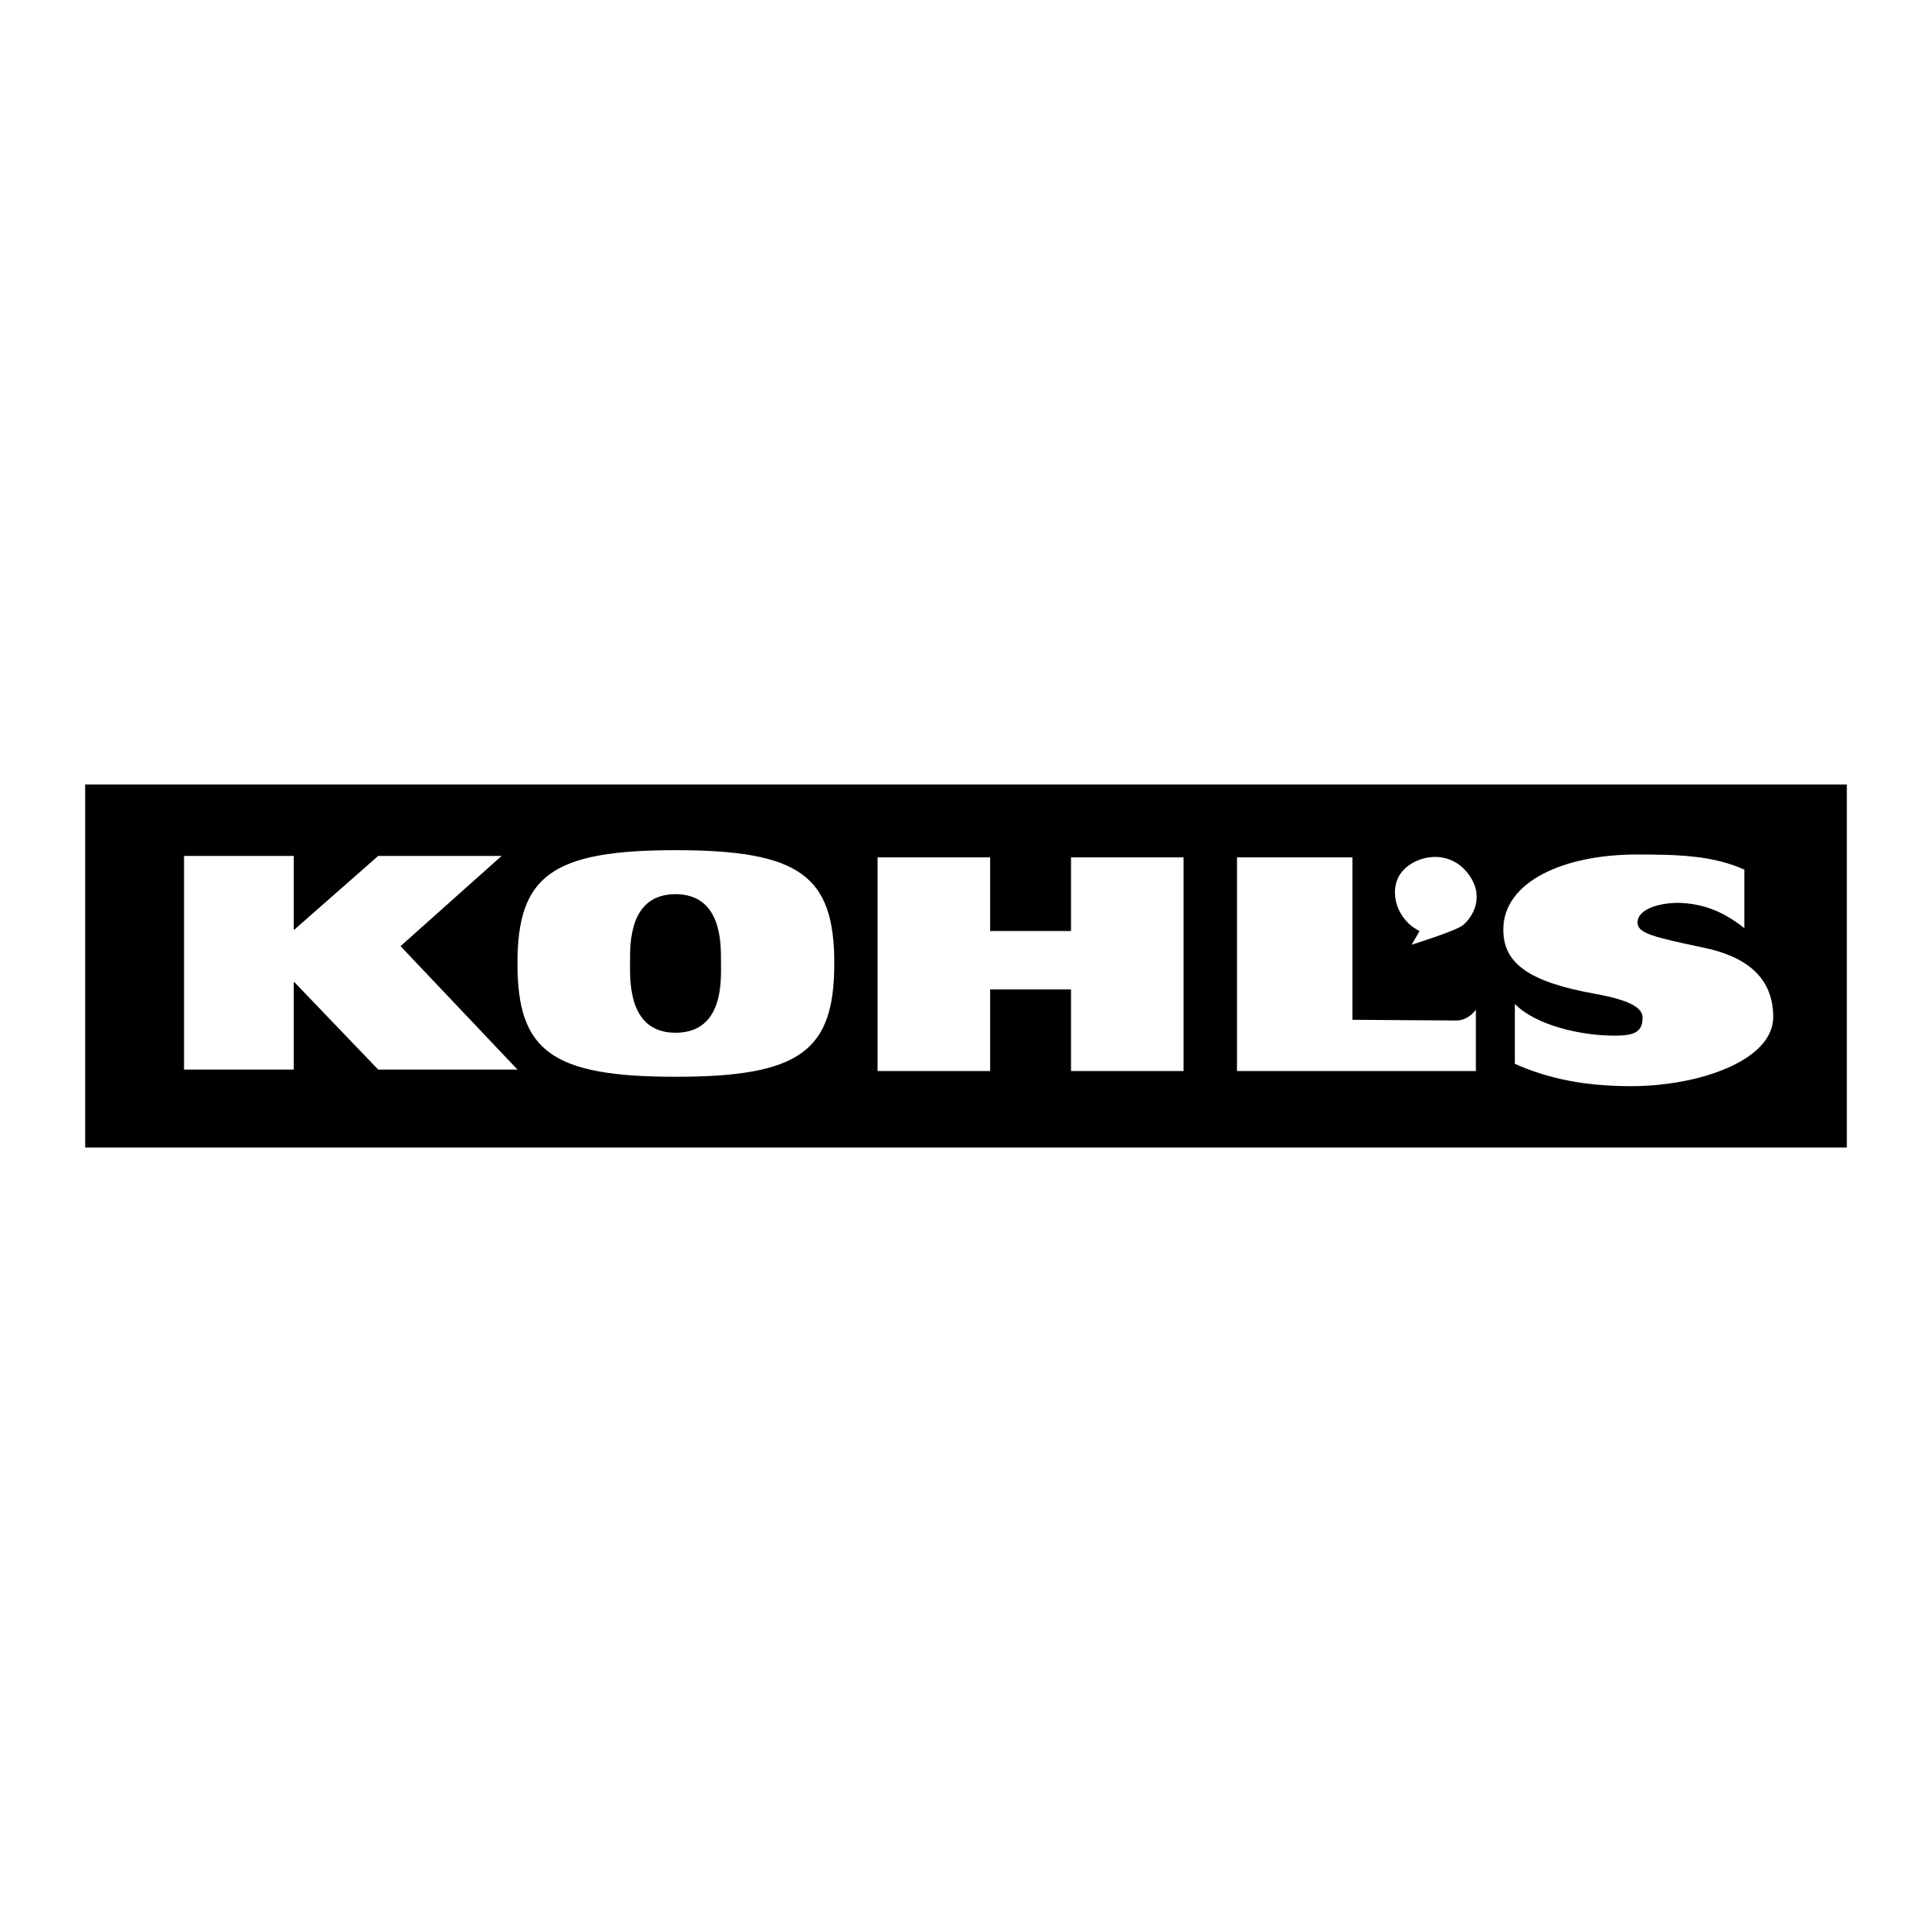 Kohls Review